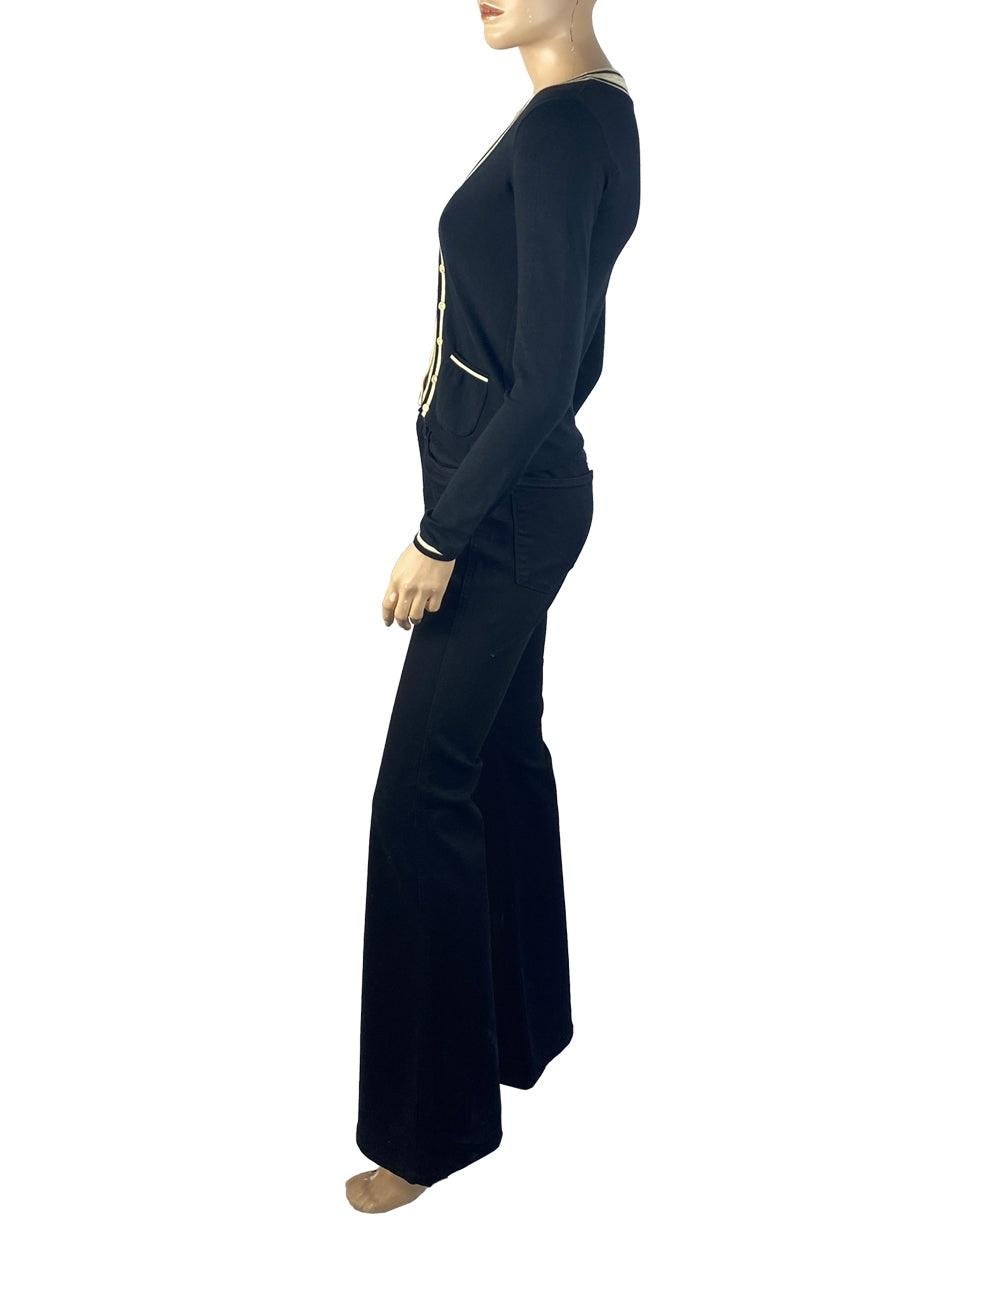 Moschino Cheap & Chic schwarz-weißer Pullover aus Viskose mit zwei Taschen auf der Vorderseite.

Zusätzliche Informationen:
MATERIAL: 80% Viskose, 20% Polyester
Größe: IT 40
Allgemeiner Zustand: Ausgezeichnet